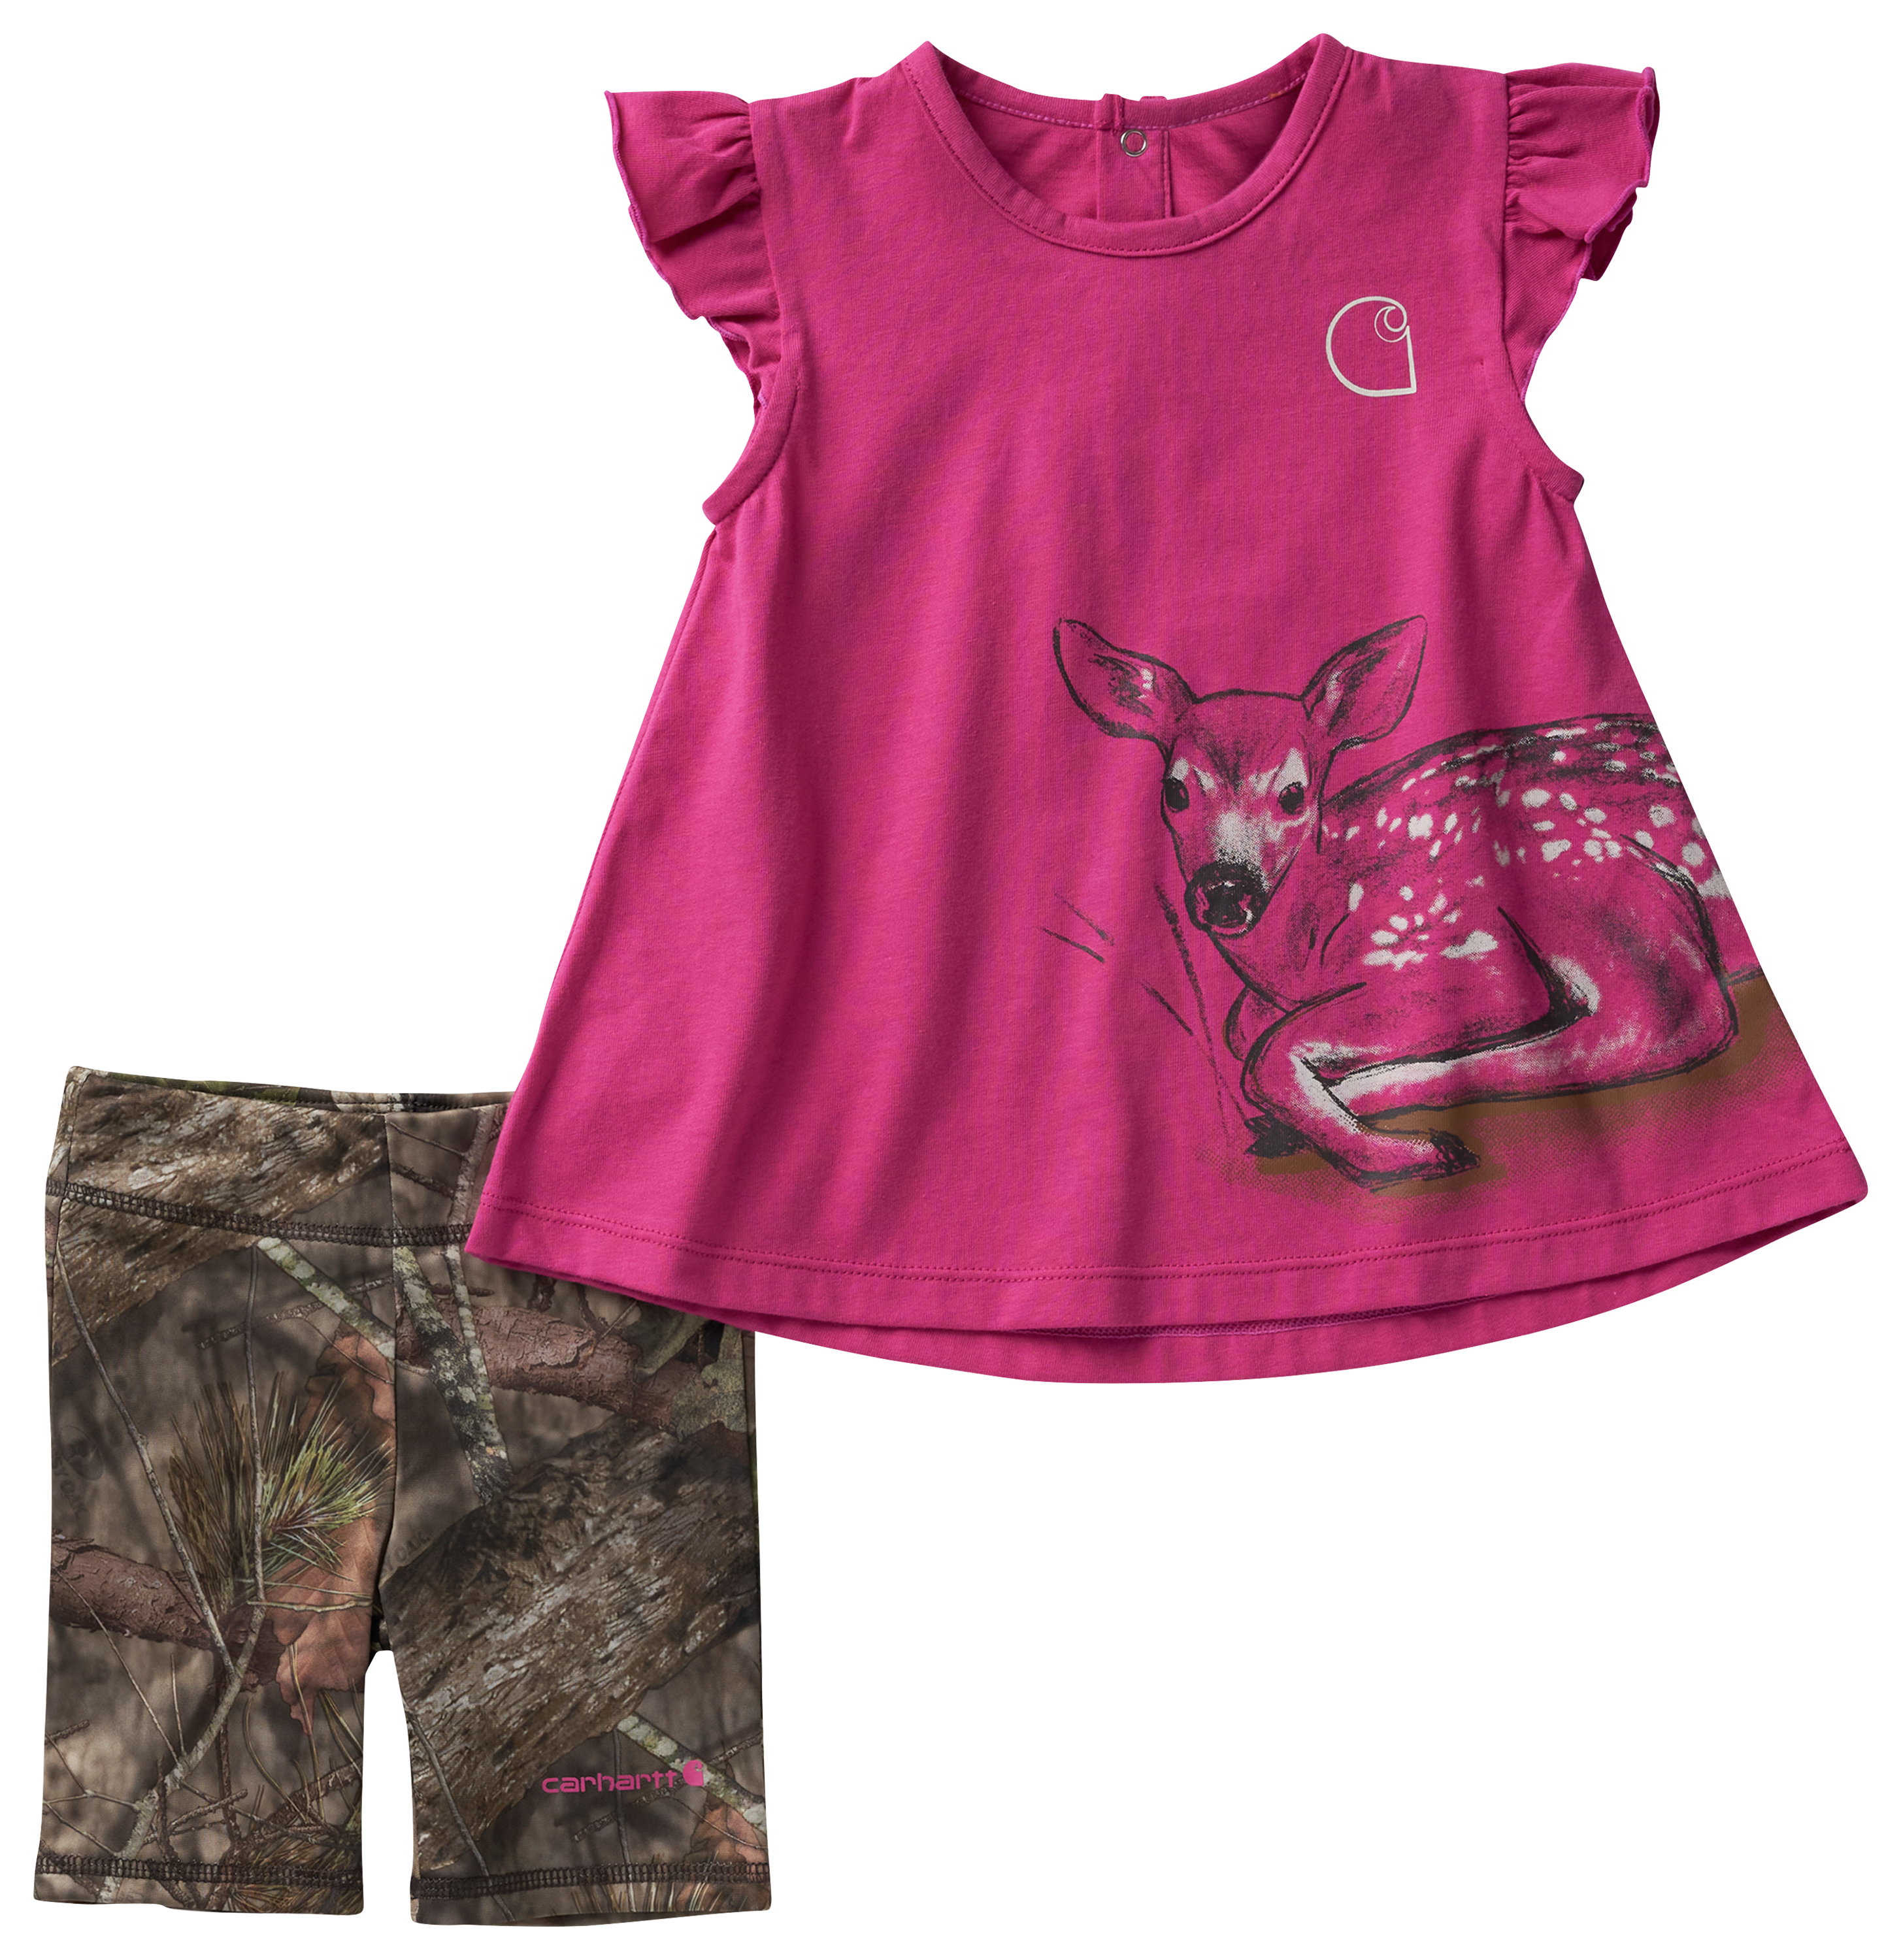 Carhartt Deer Short Sleeve Shirt and Camo Print Legging Shorts Set for Babies 6 Months